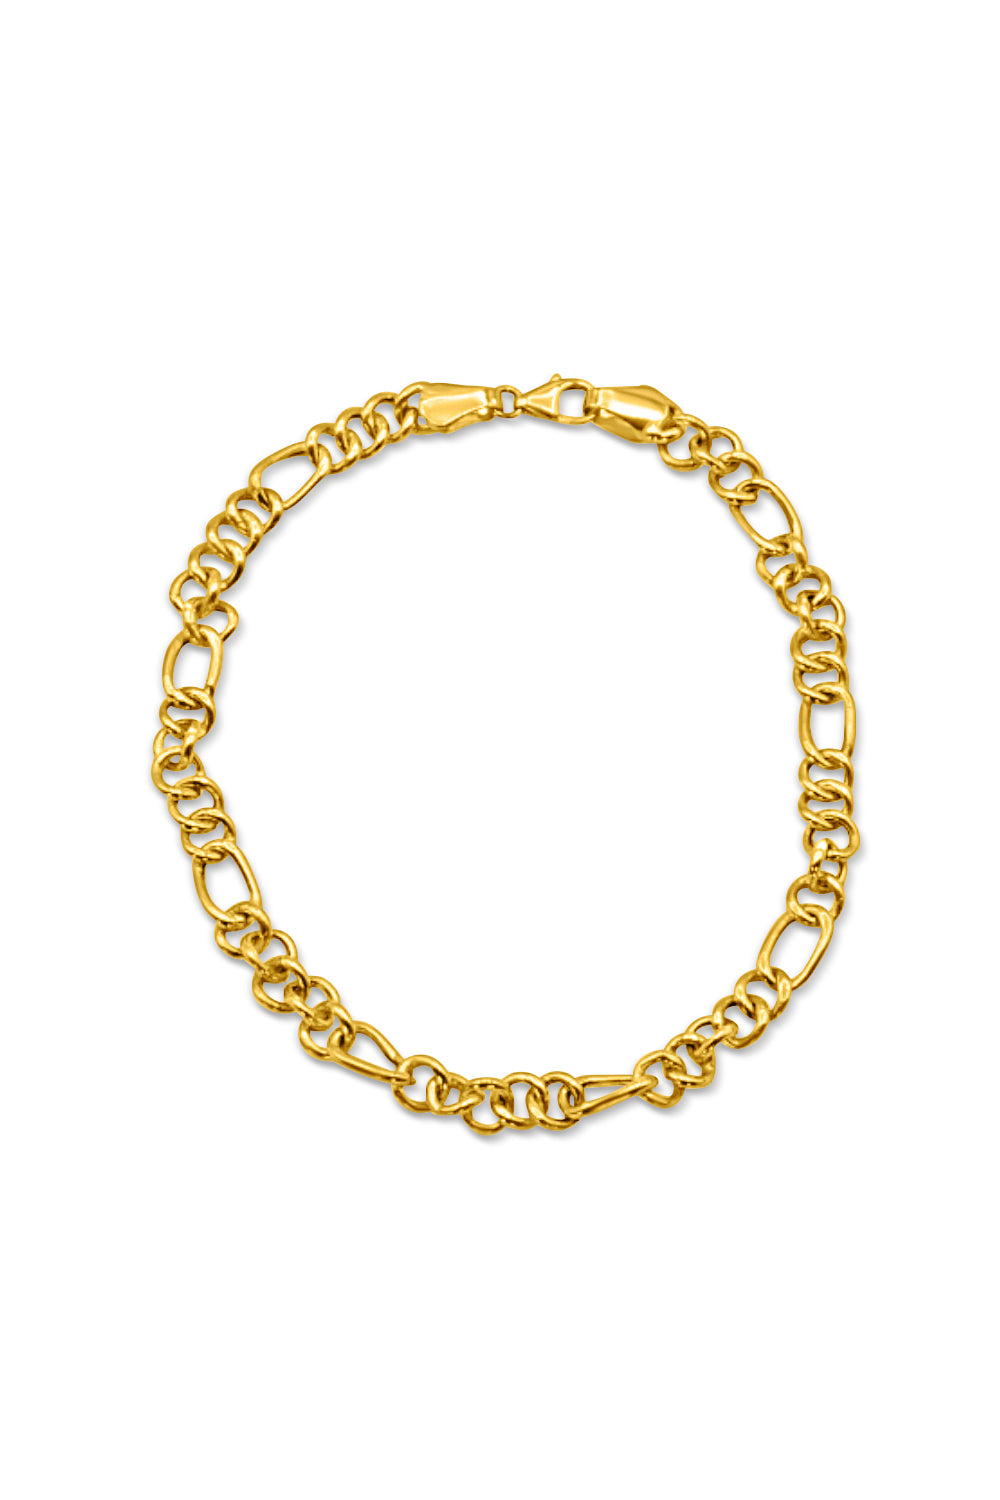 Women's Cuban Link Bracelet - 3mm - Gold Jewelry - JAXXON